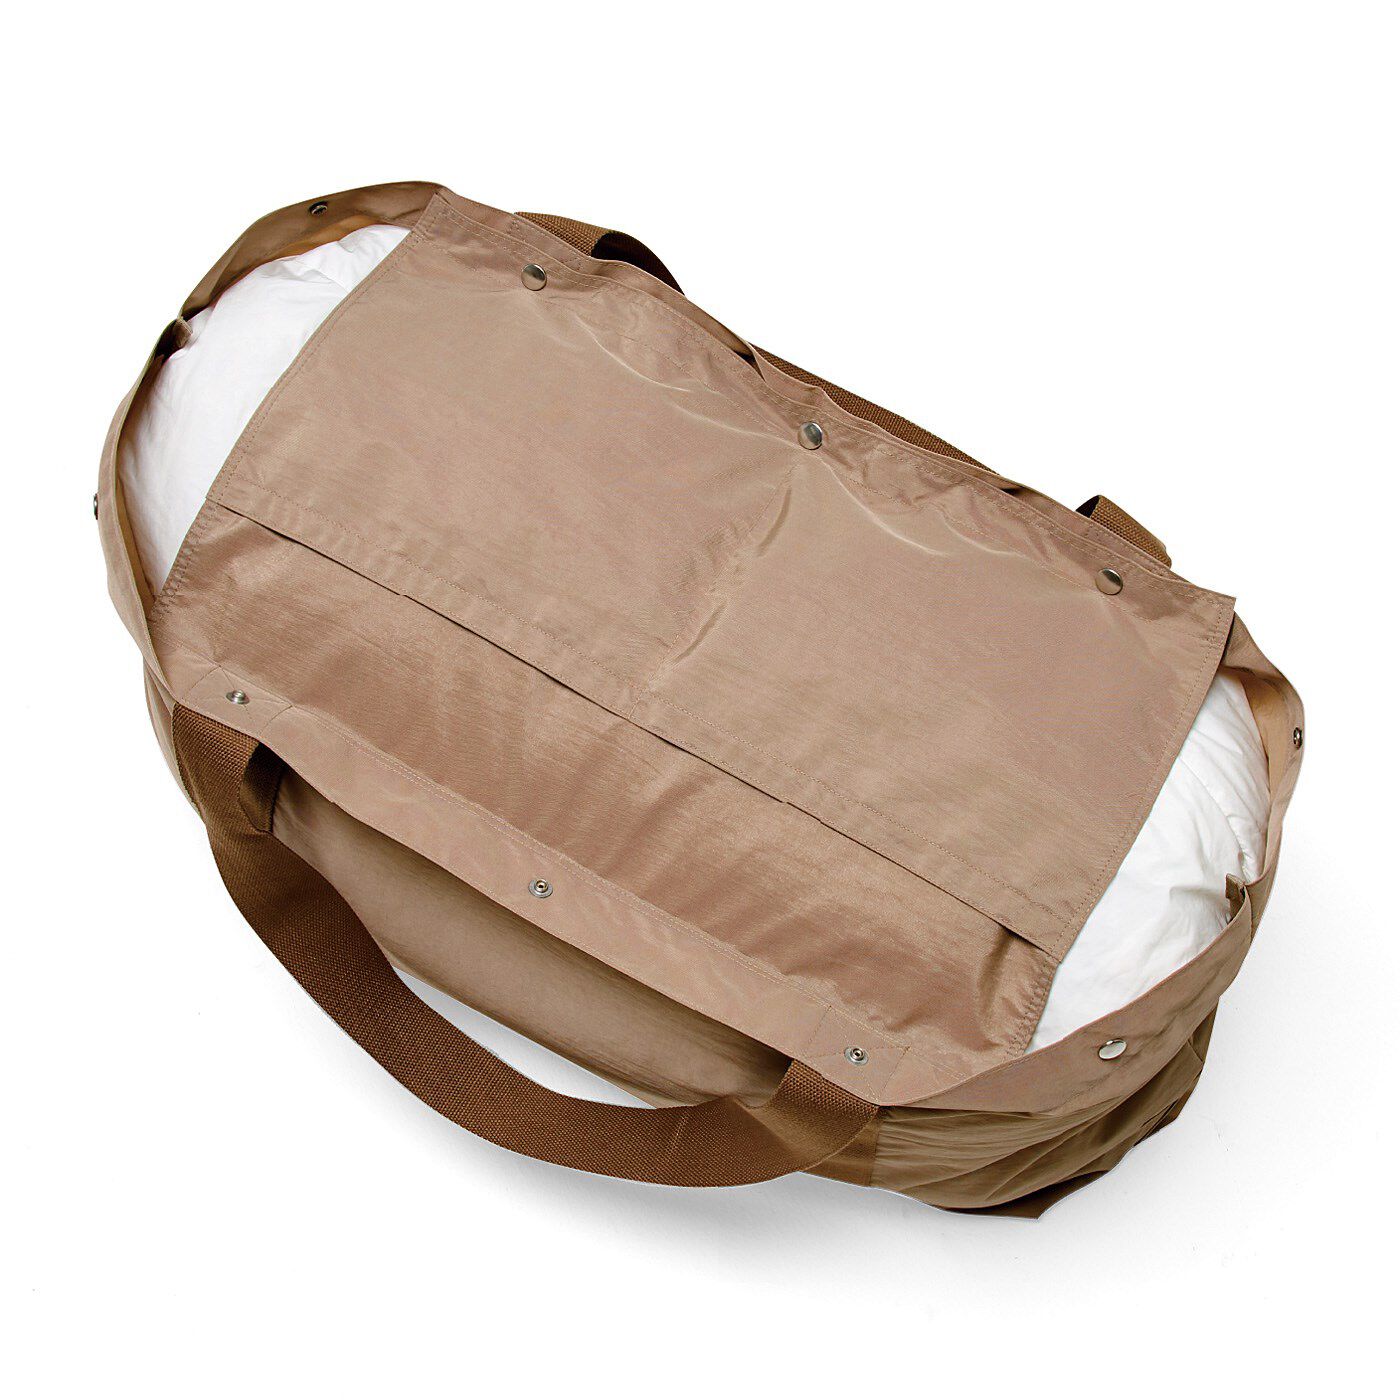 USEDo|長い荷物も持ち運びOK　たたむと小さくなる 撥水加工の細長ビッグナイロントートバッグの会|内側のつりポケットはスナップで留めると目隠しに変身。